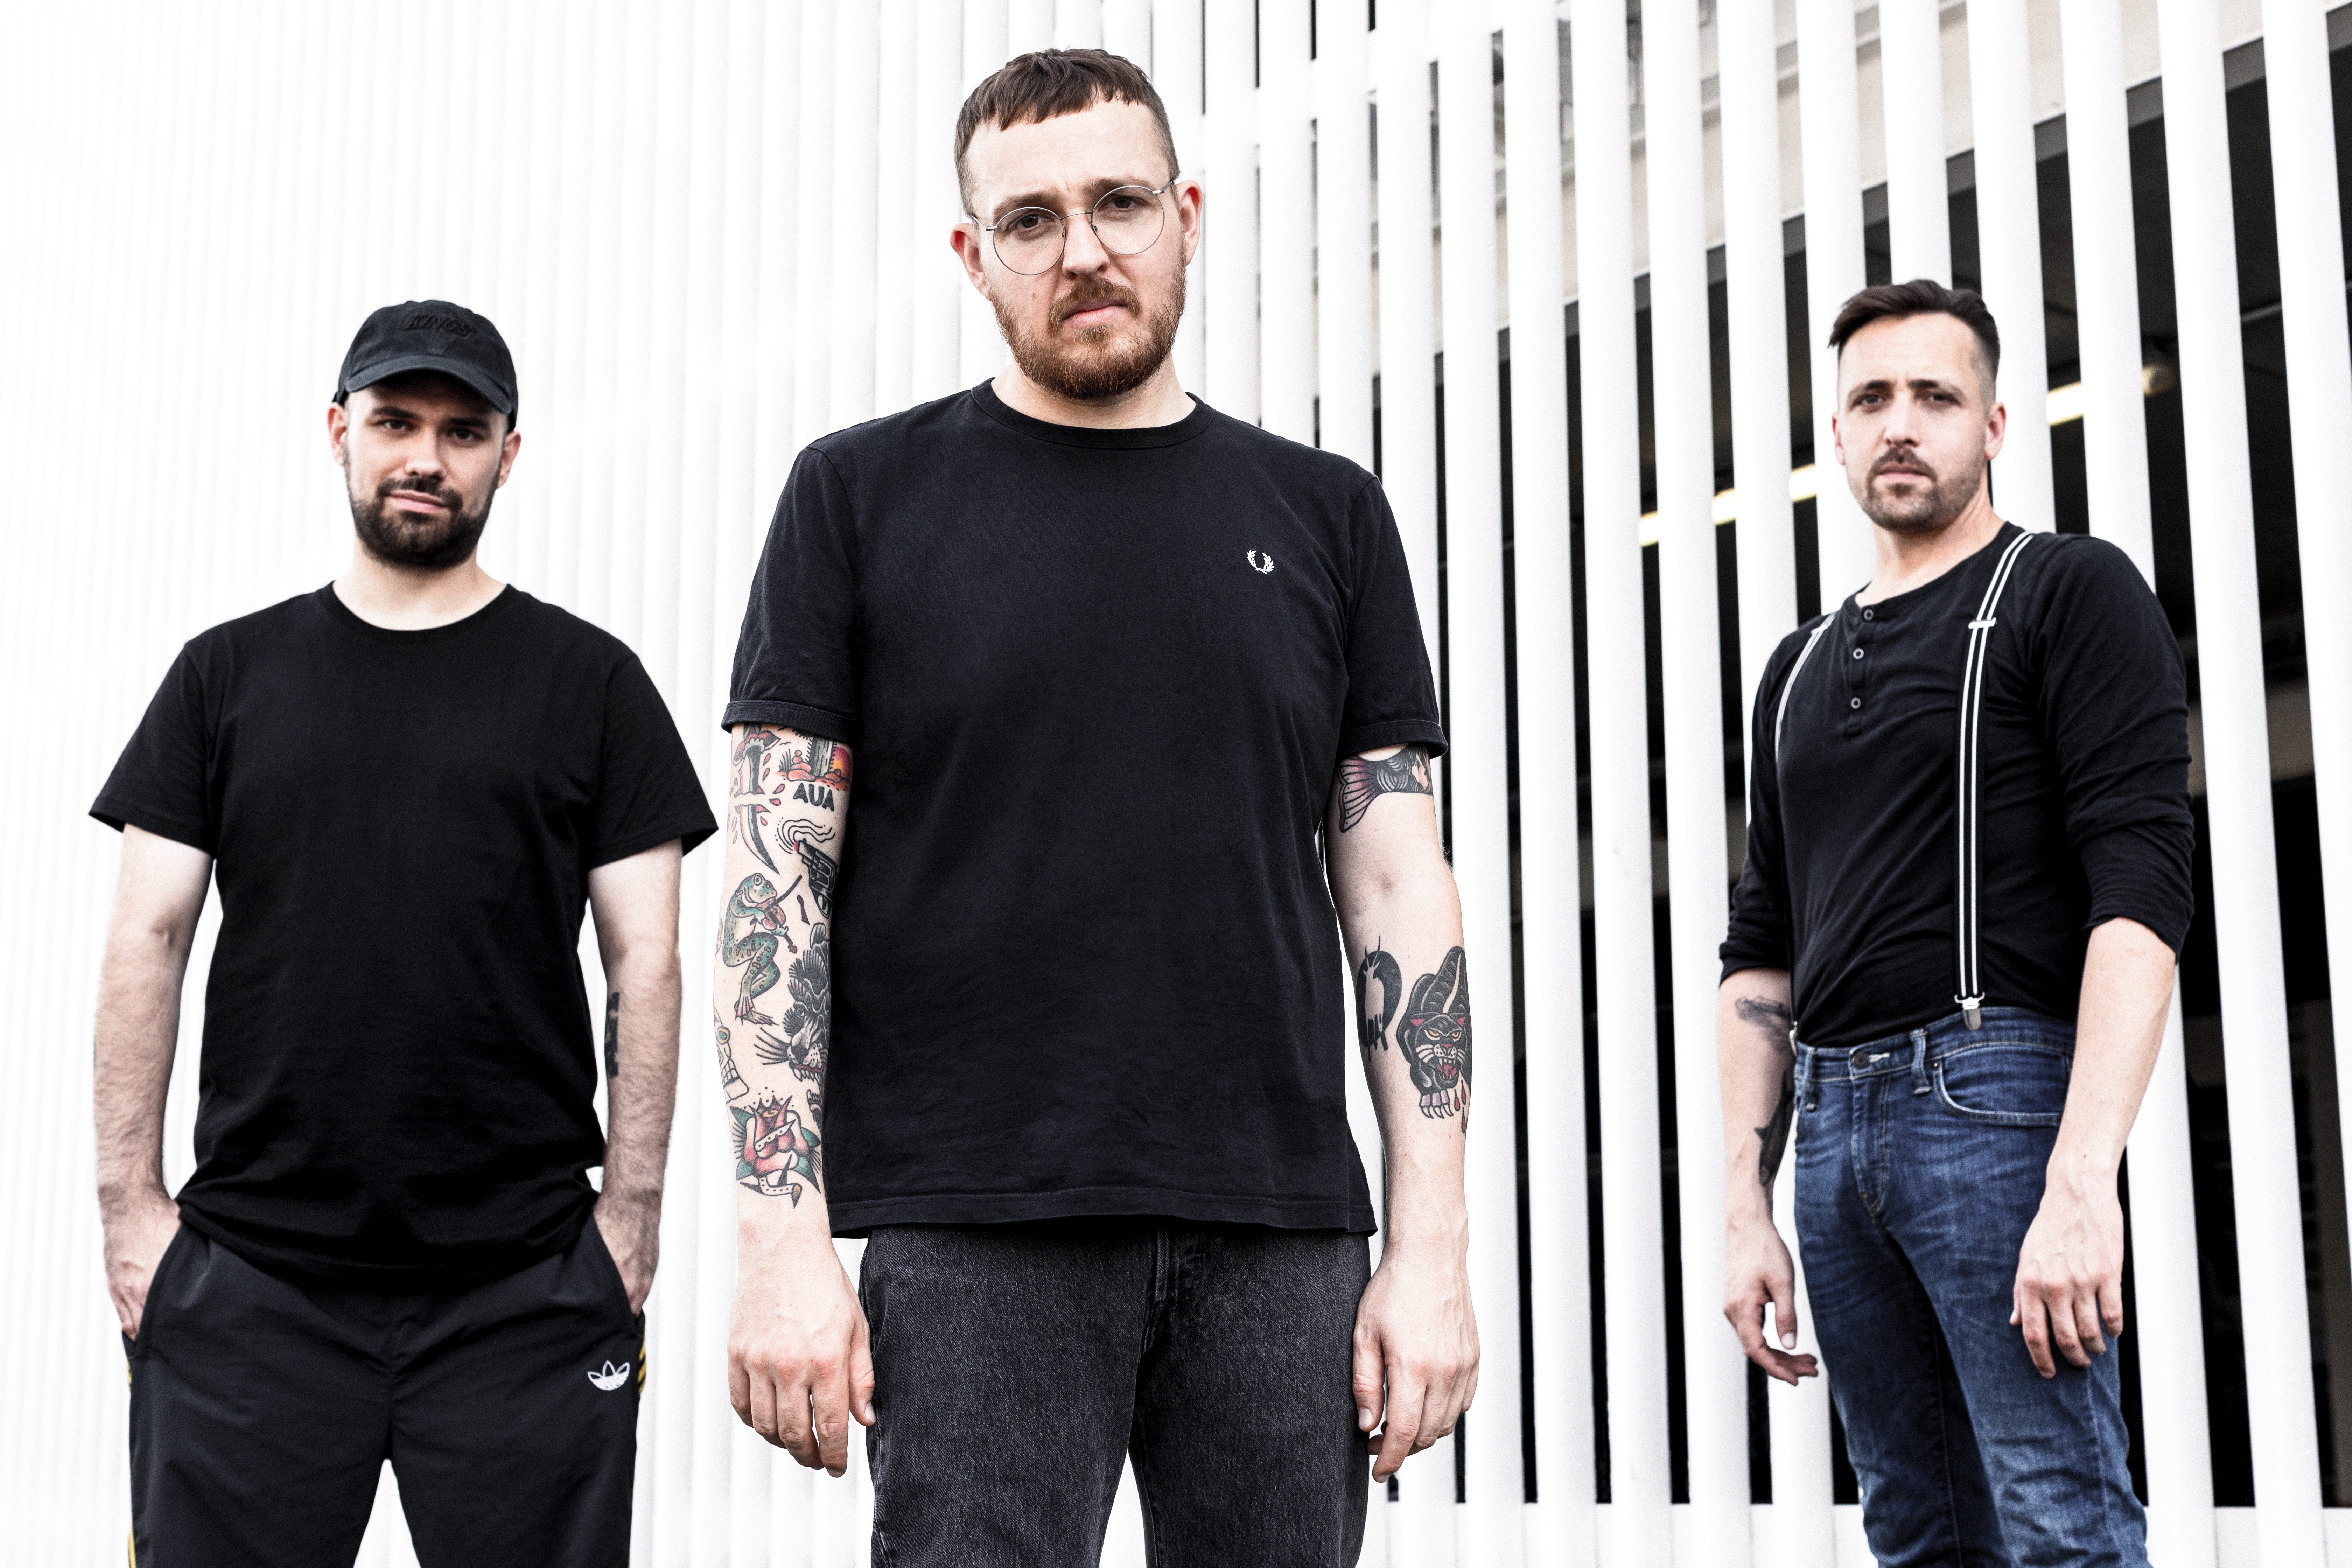   Überlebenden Gang | Die Düsseldorfer Punkrapper der Antilopen Gang halten mit neuem Album das Energielevel oben  